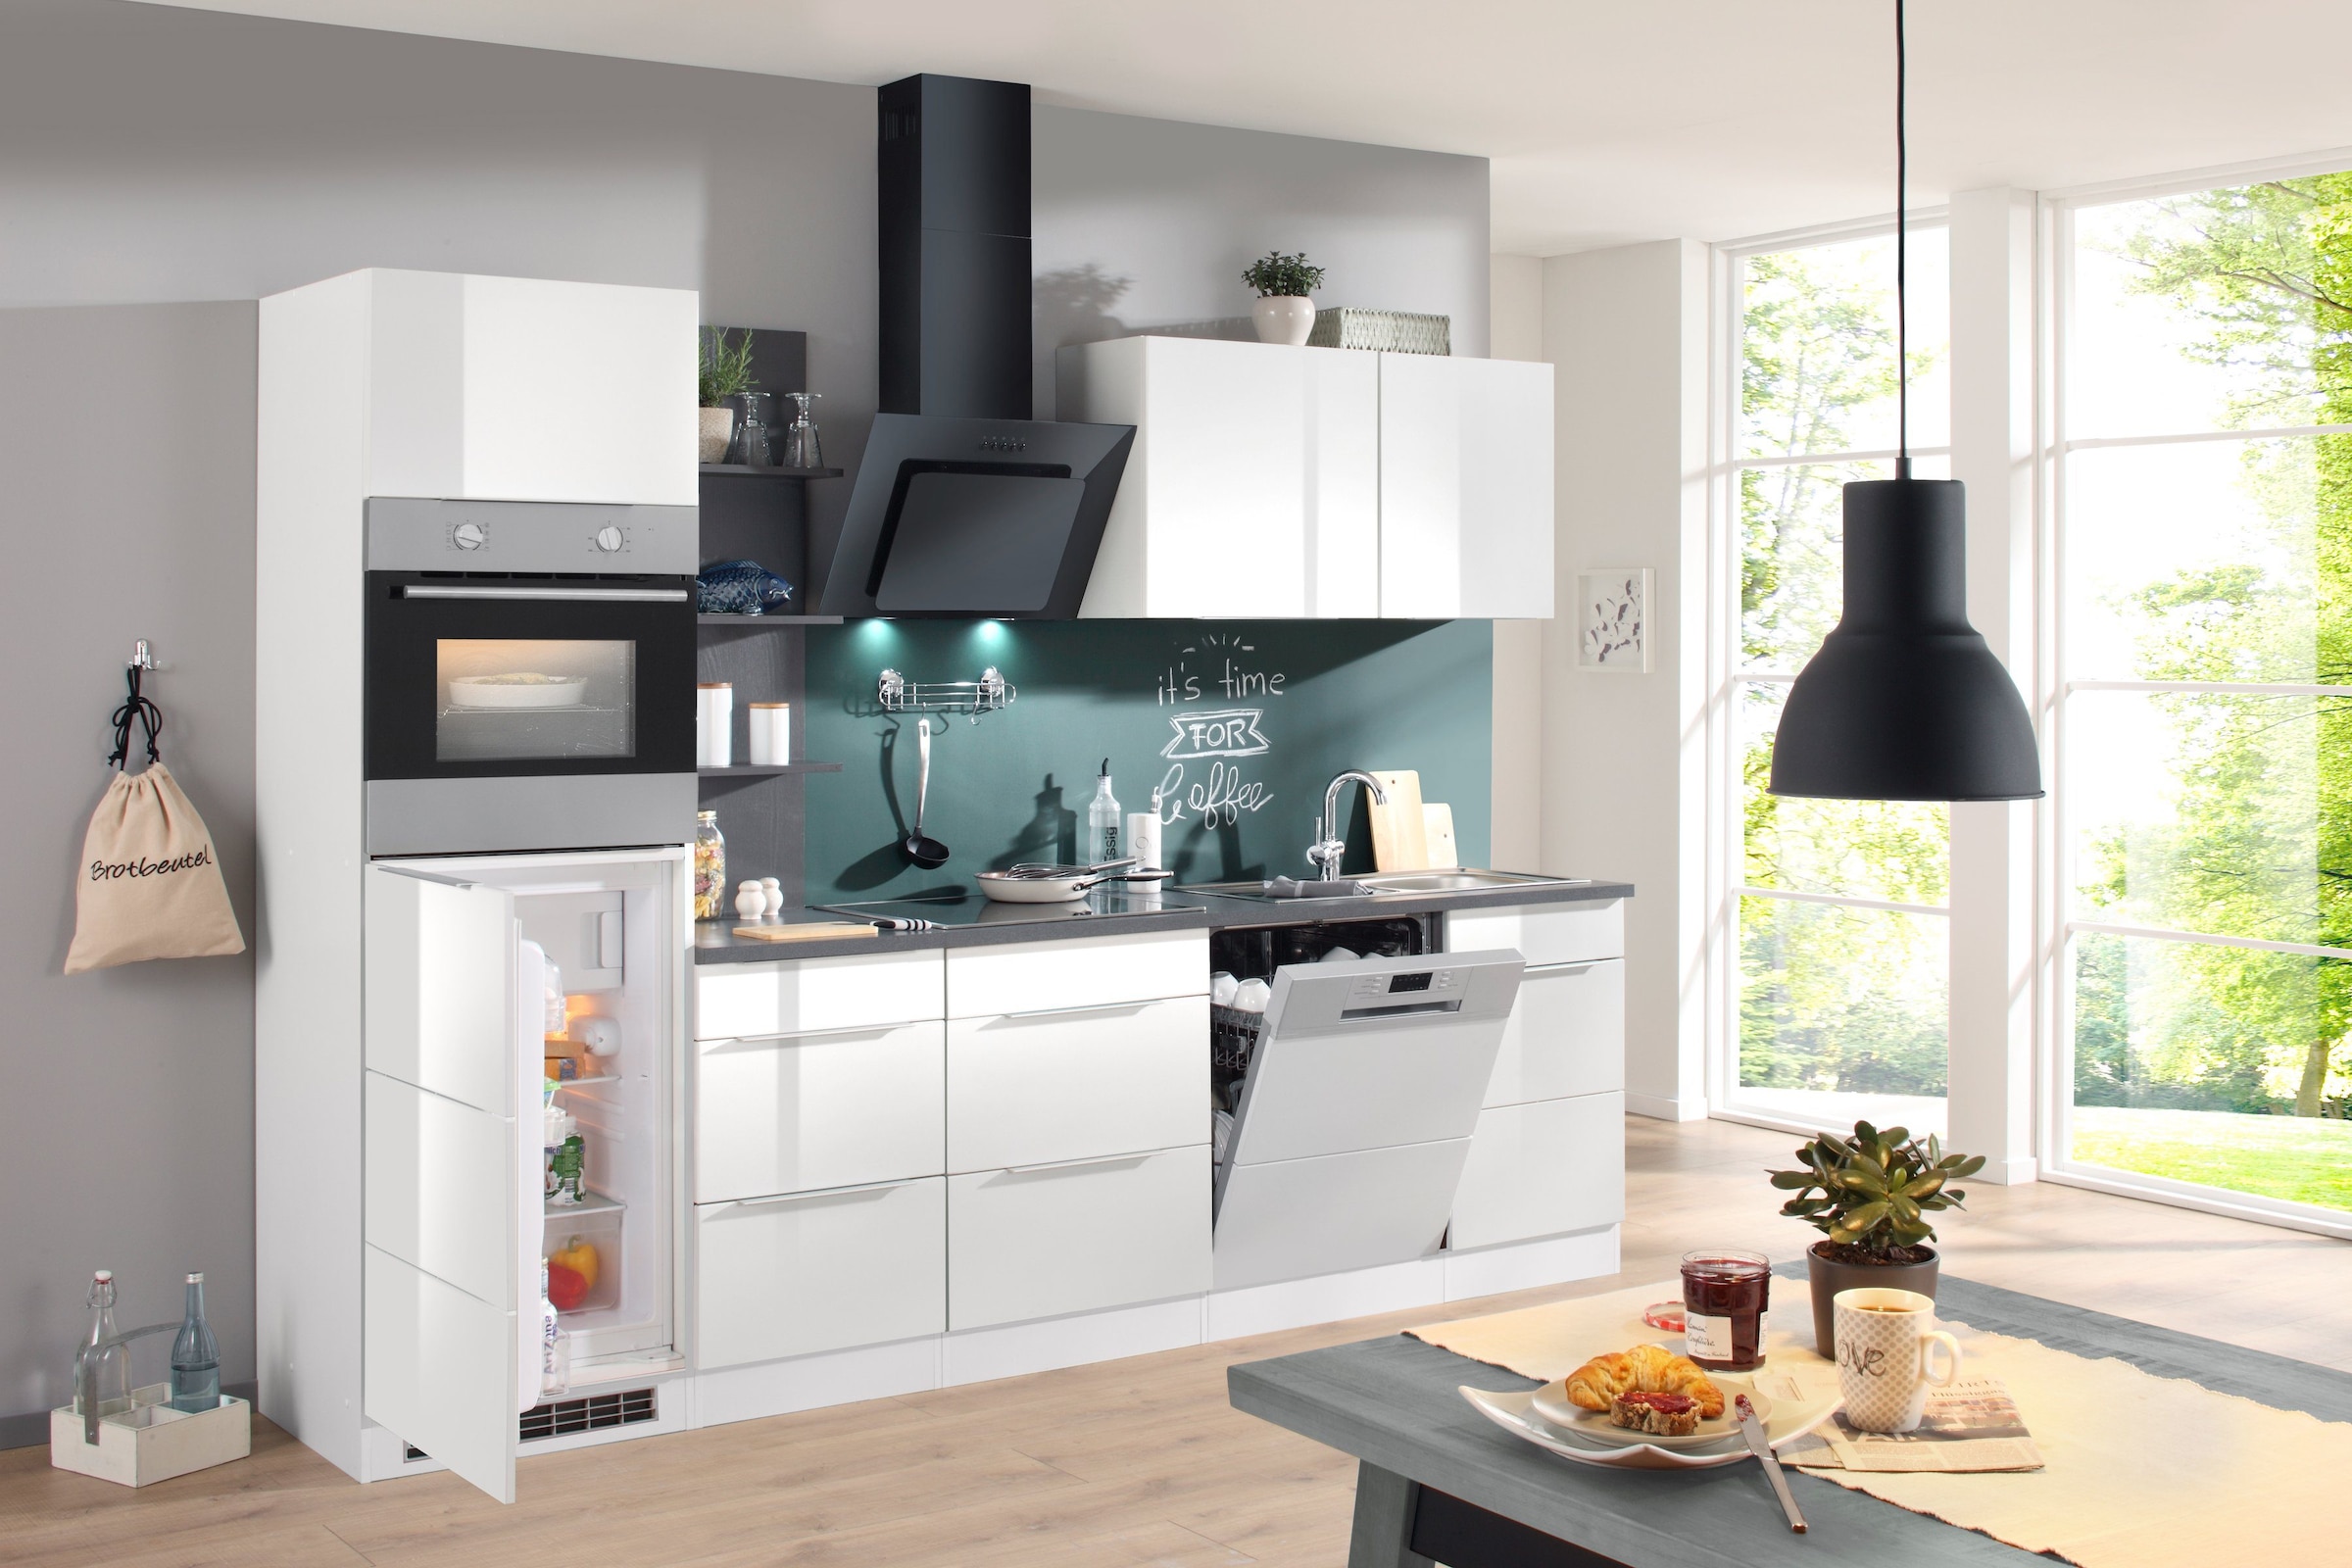 Kochstation Spülenschrank »KS-Brindisi«, 110 cm breit, inkl. Möbeltür für Geschirrspüler sowie Einbauspüle